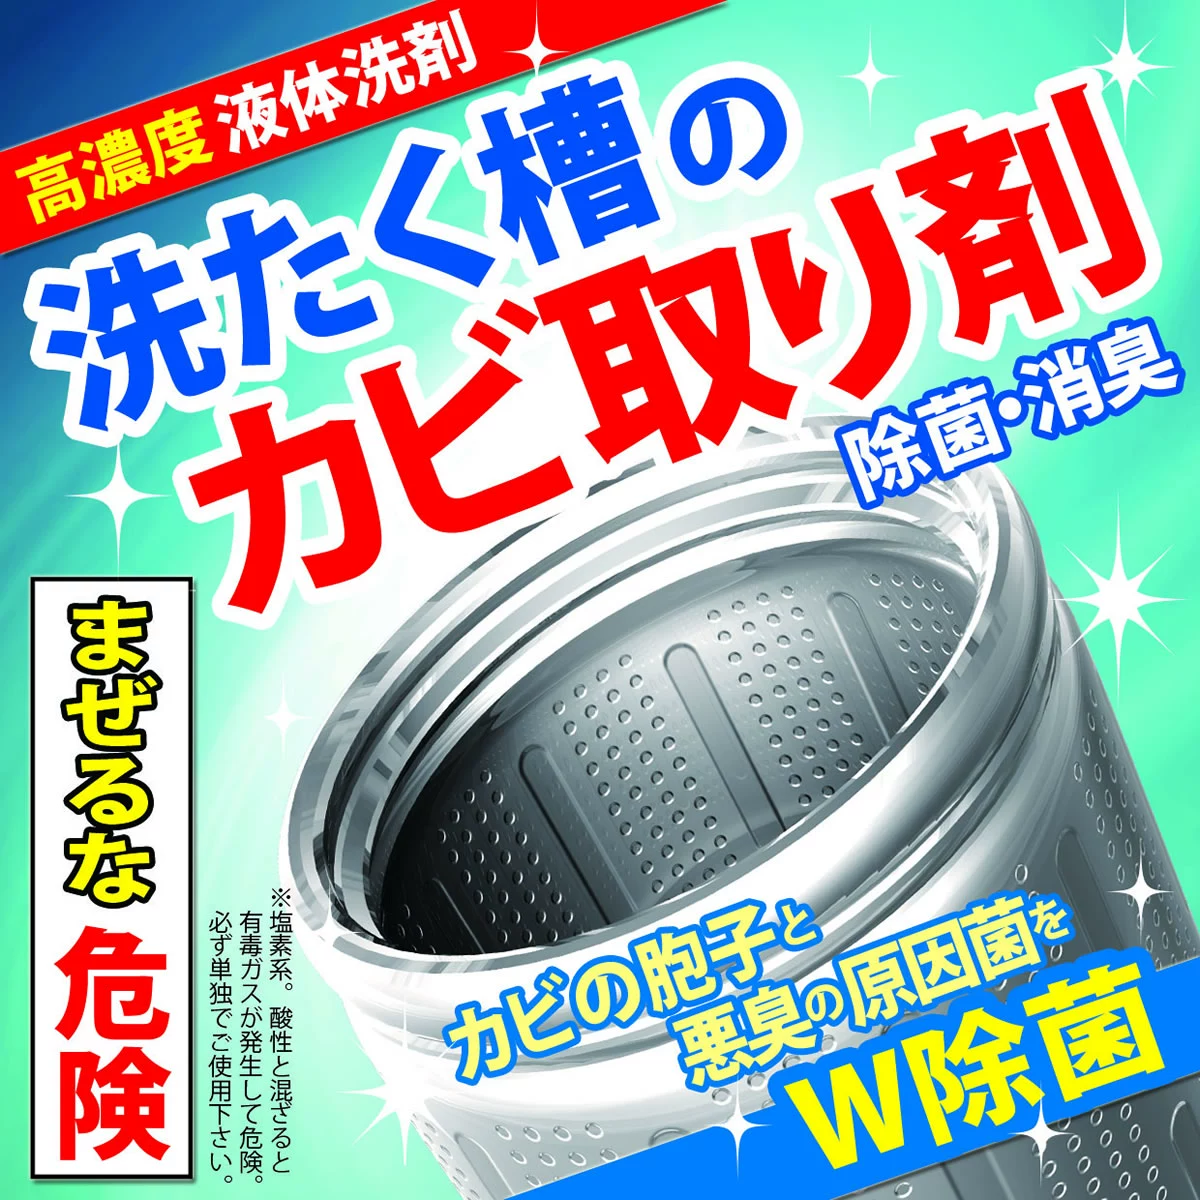 msone Nhật Bản máy giặt đại lý làm sạch chất khử cặn xung pulsator trống tự động bên trong bể dung dịch làm sạch 500ml - Trang chủ